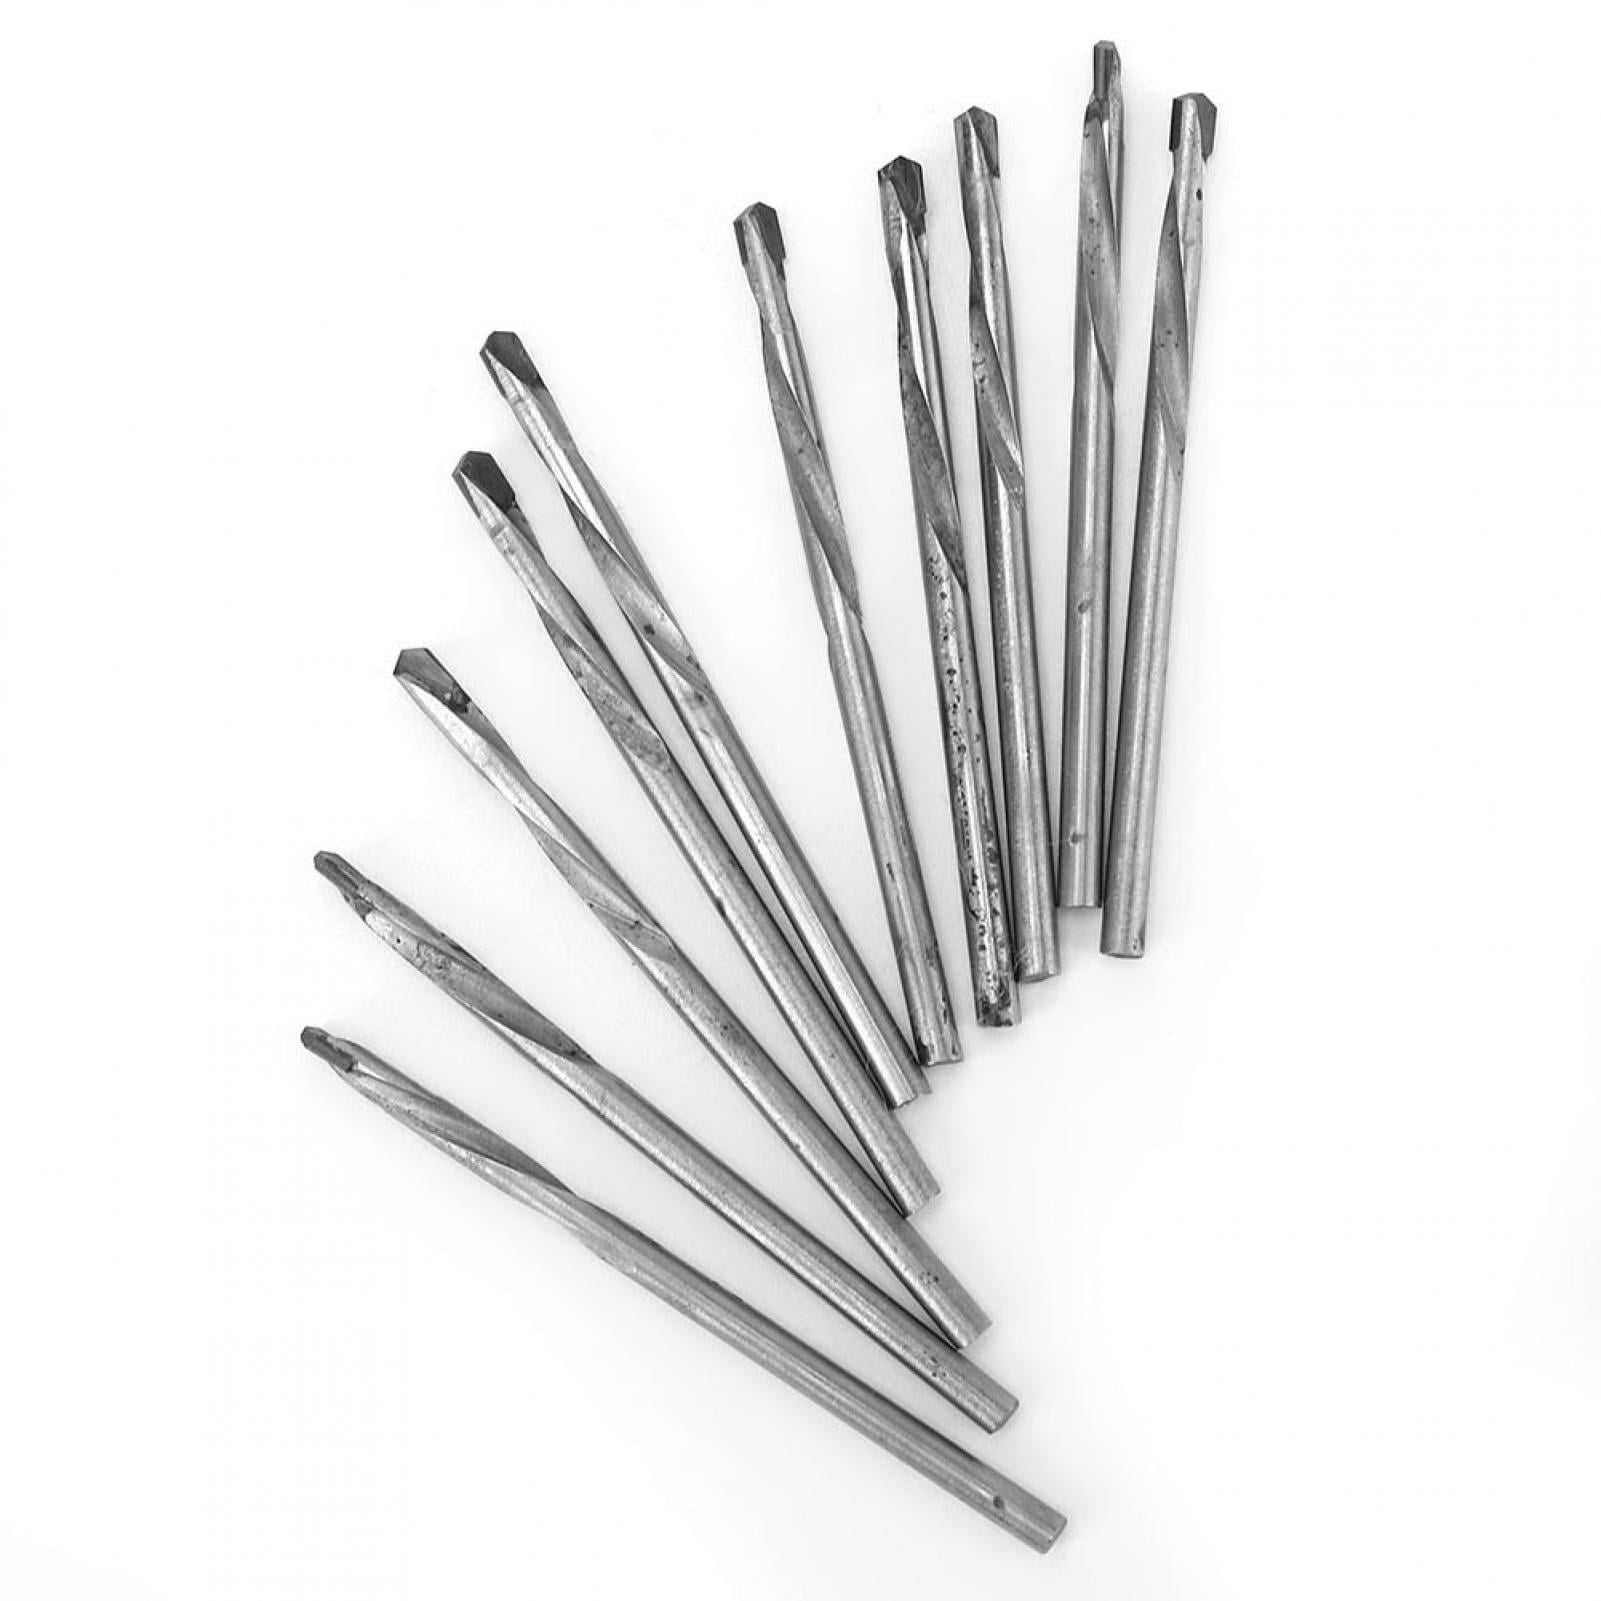 10pcs Straight Shank Twist Drill Bit Set Carbide Round Shank Drill Bit Kit for Wood Plastic Metal 3.0mm/4.0mm/6.8mm/7.0mm 4.0mm 